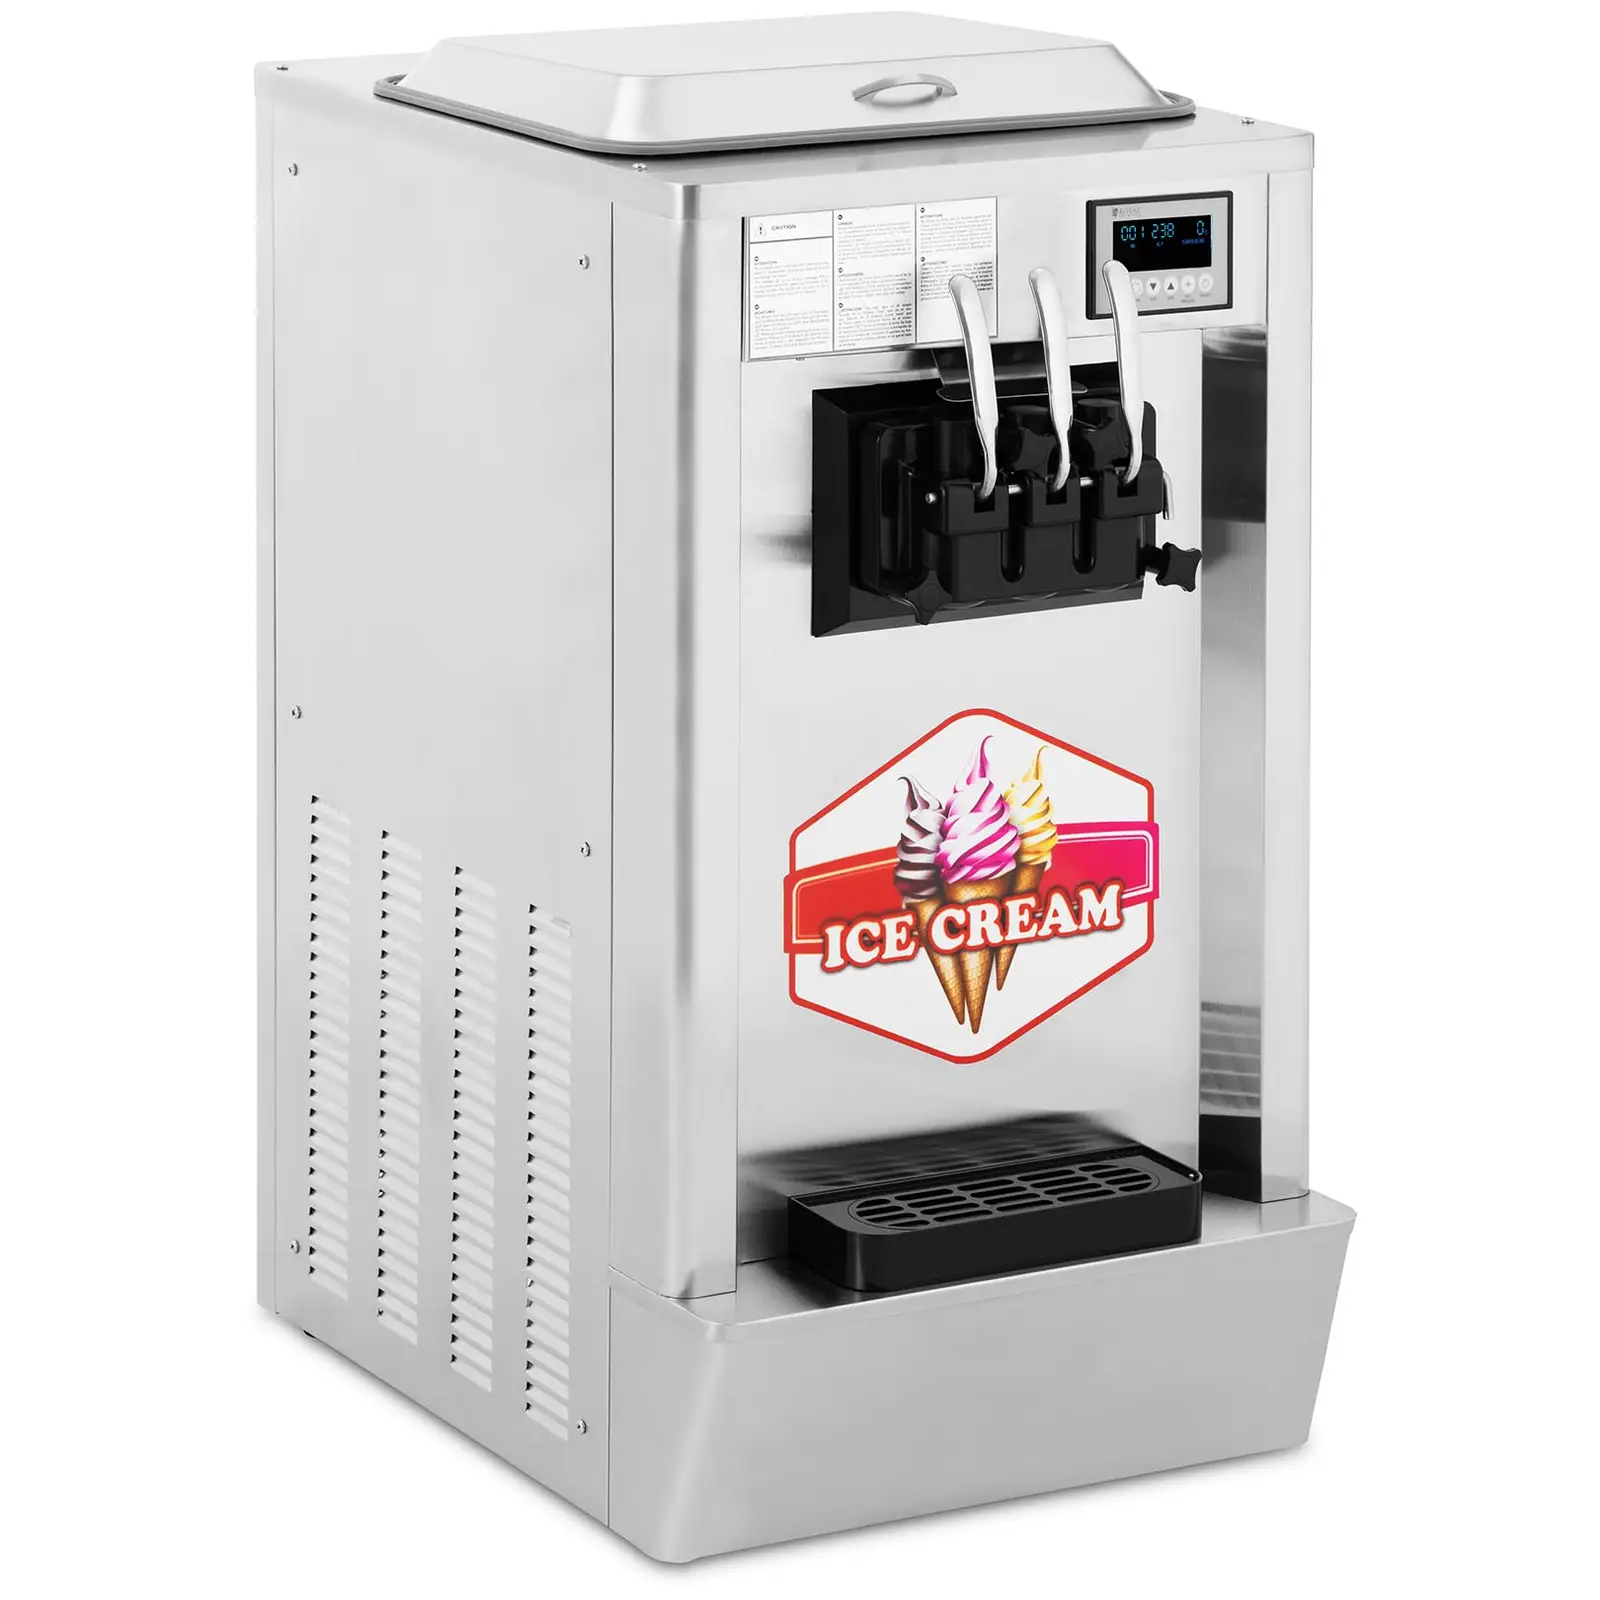 Minkštųjų ledų gaminimo aparatas - 1550 W - 23 l/val. - 3 skoniai - „Royal Catering“